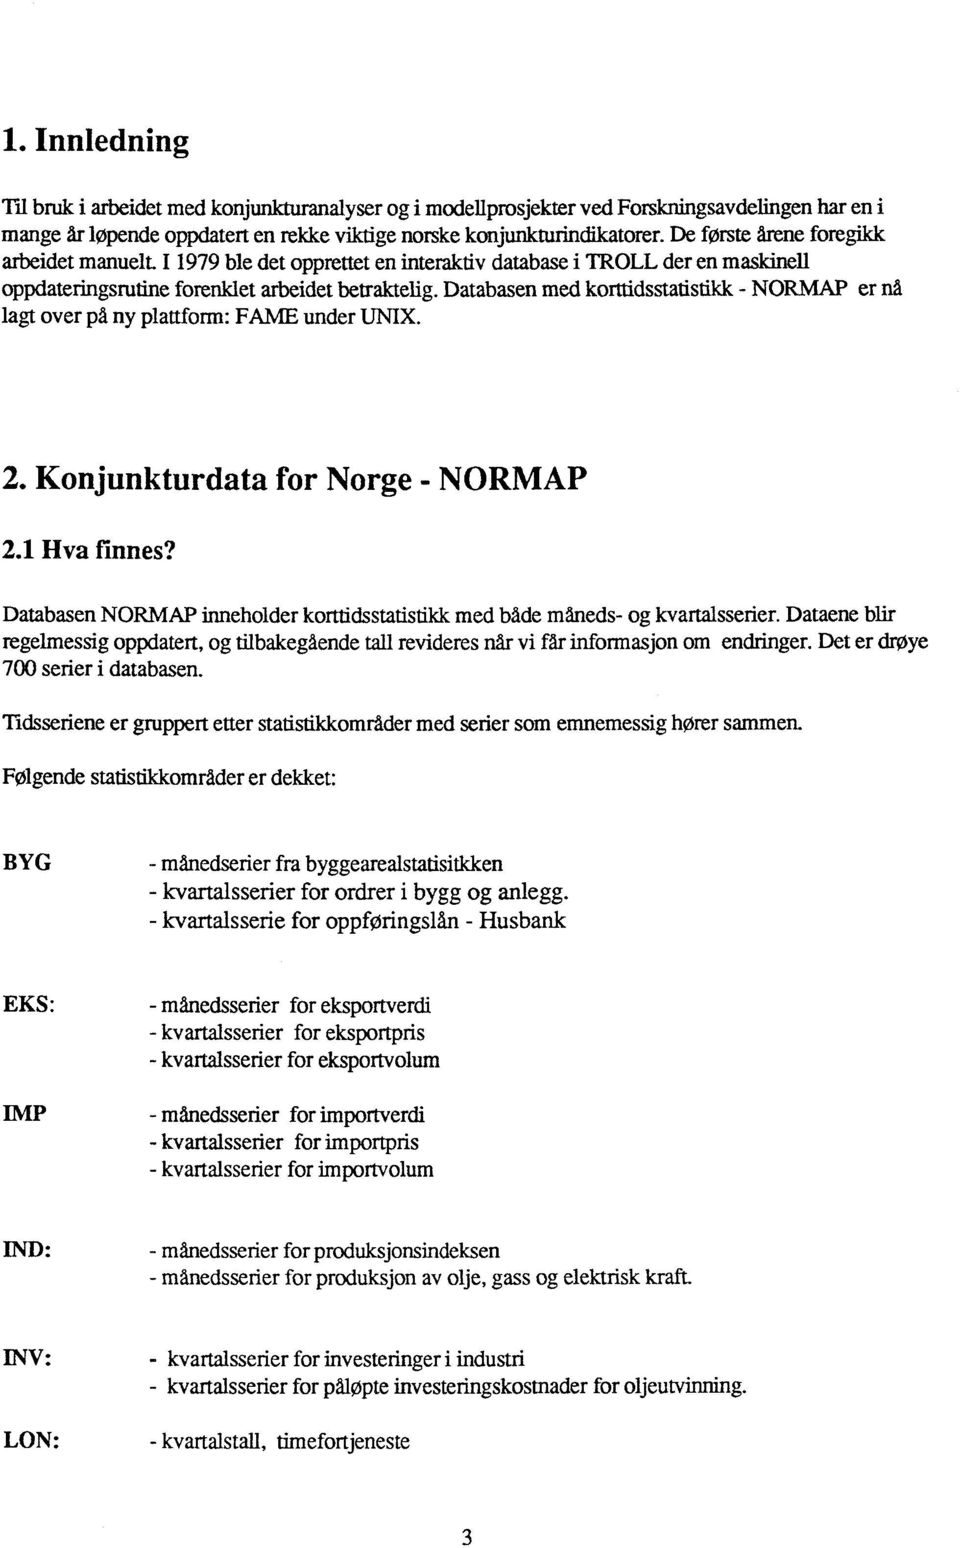 Databasen med korttidsstatistikk NORMAP er nå lagt over på ny plattform: FAME under UNIX. 2. Konjunkturdata for Norge - NORMAP 2.1 Hva finnes?